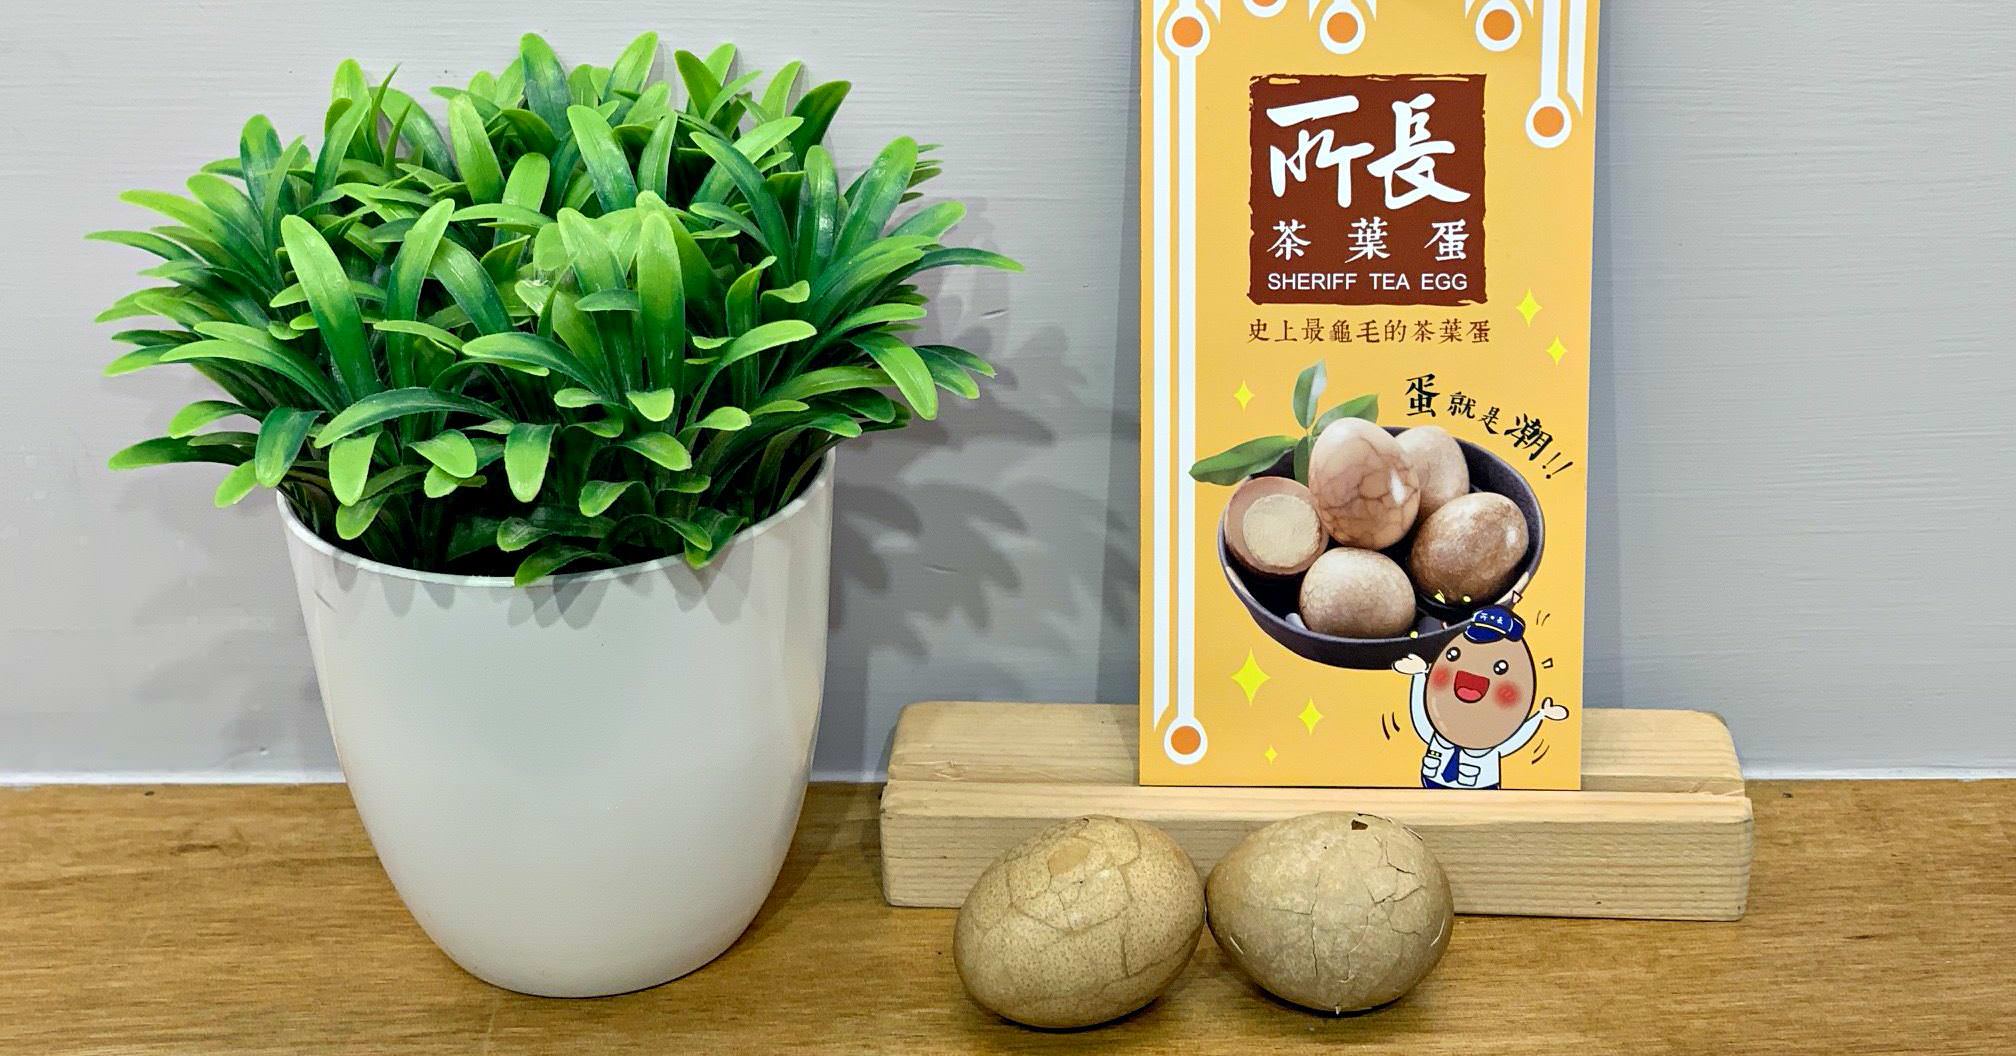 所長茶葉蛋|台北南港美食-史上最龜毛的茶葉蛋 (菜單價錢)